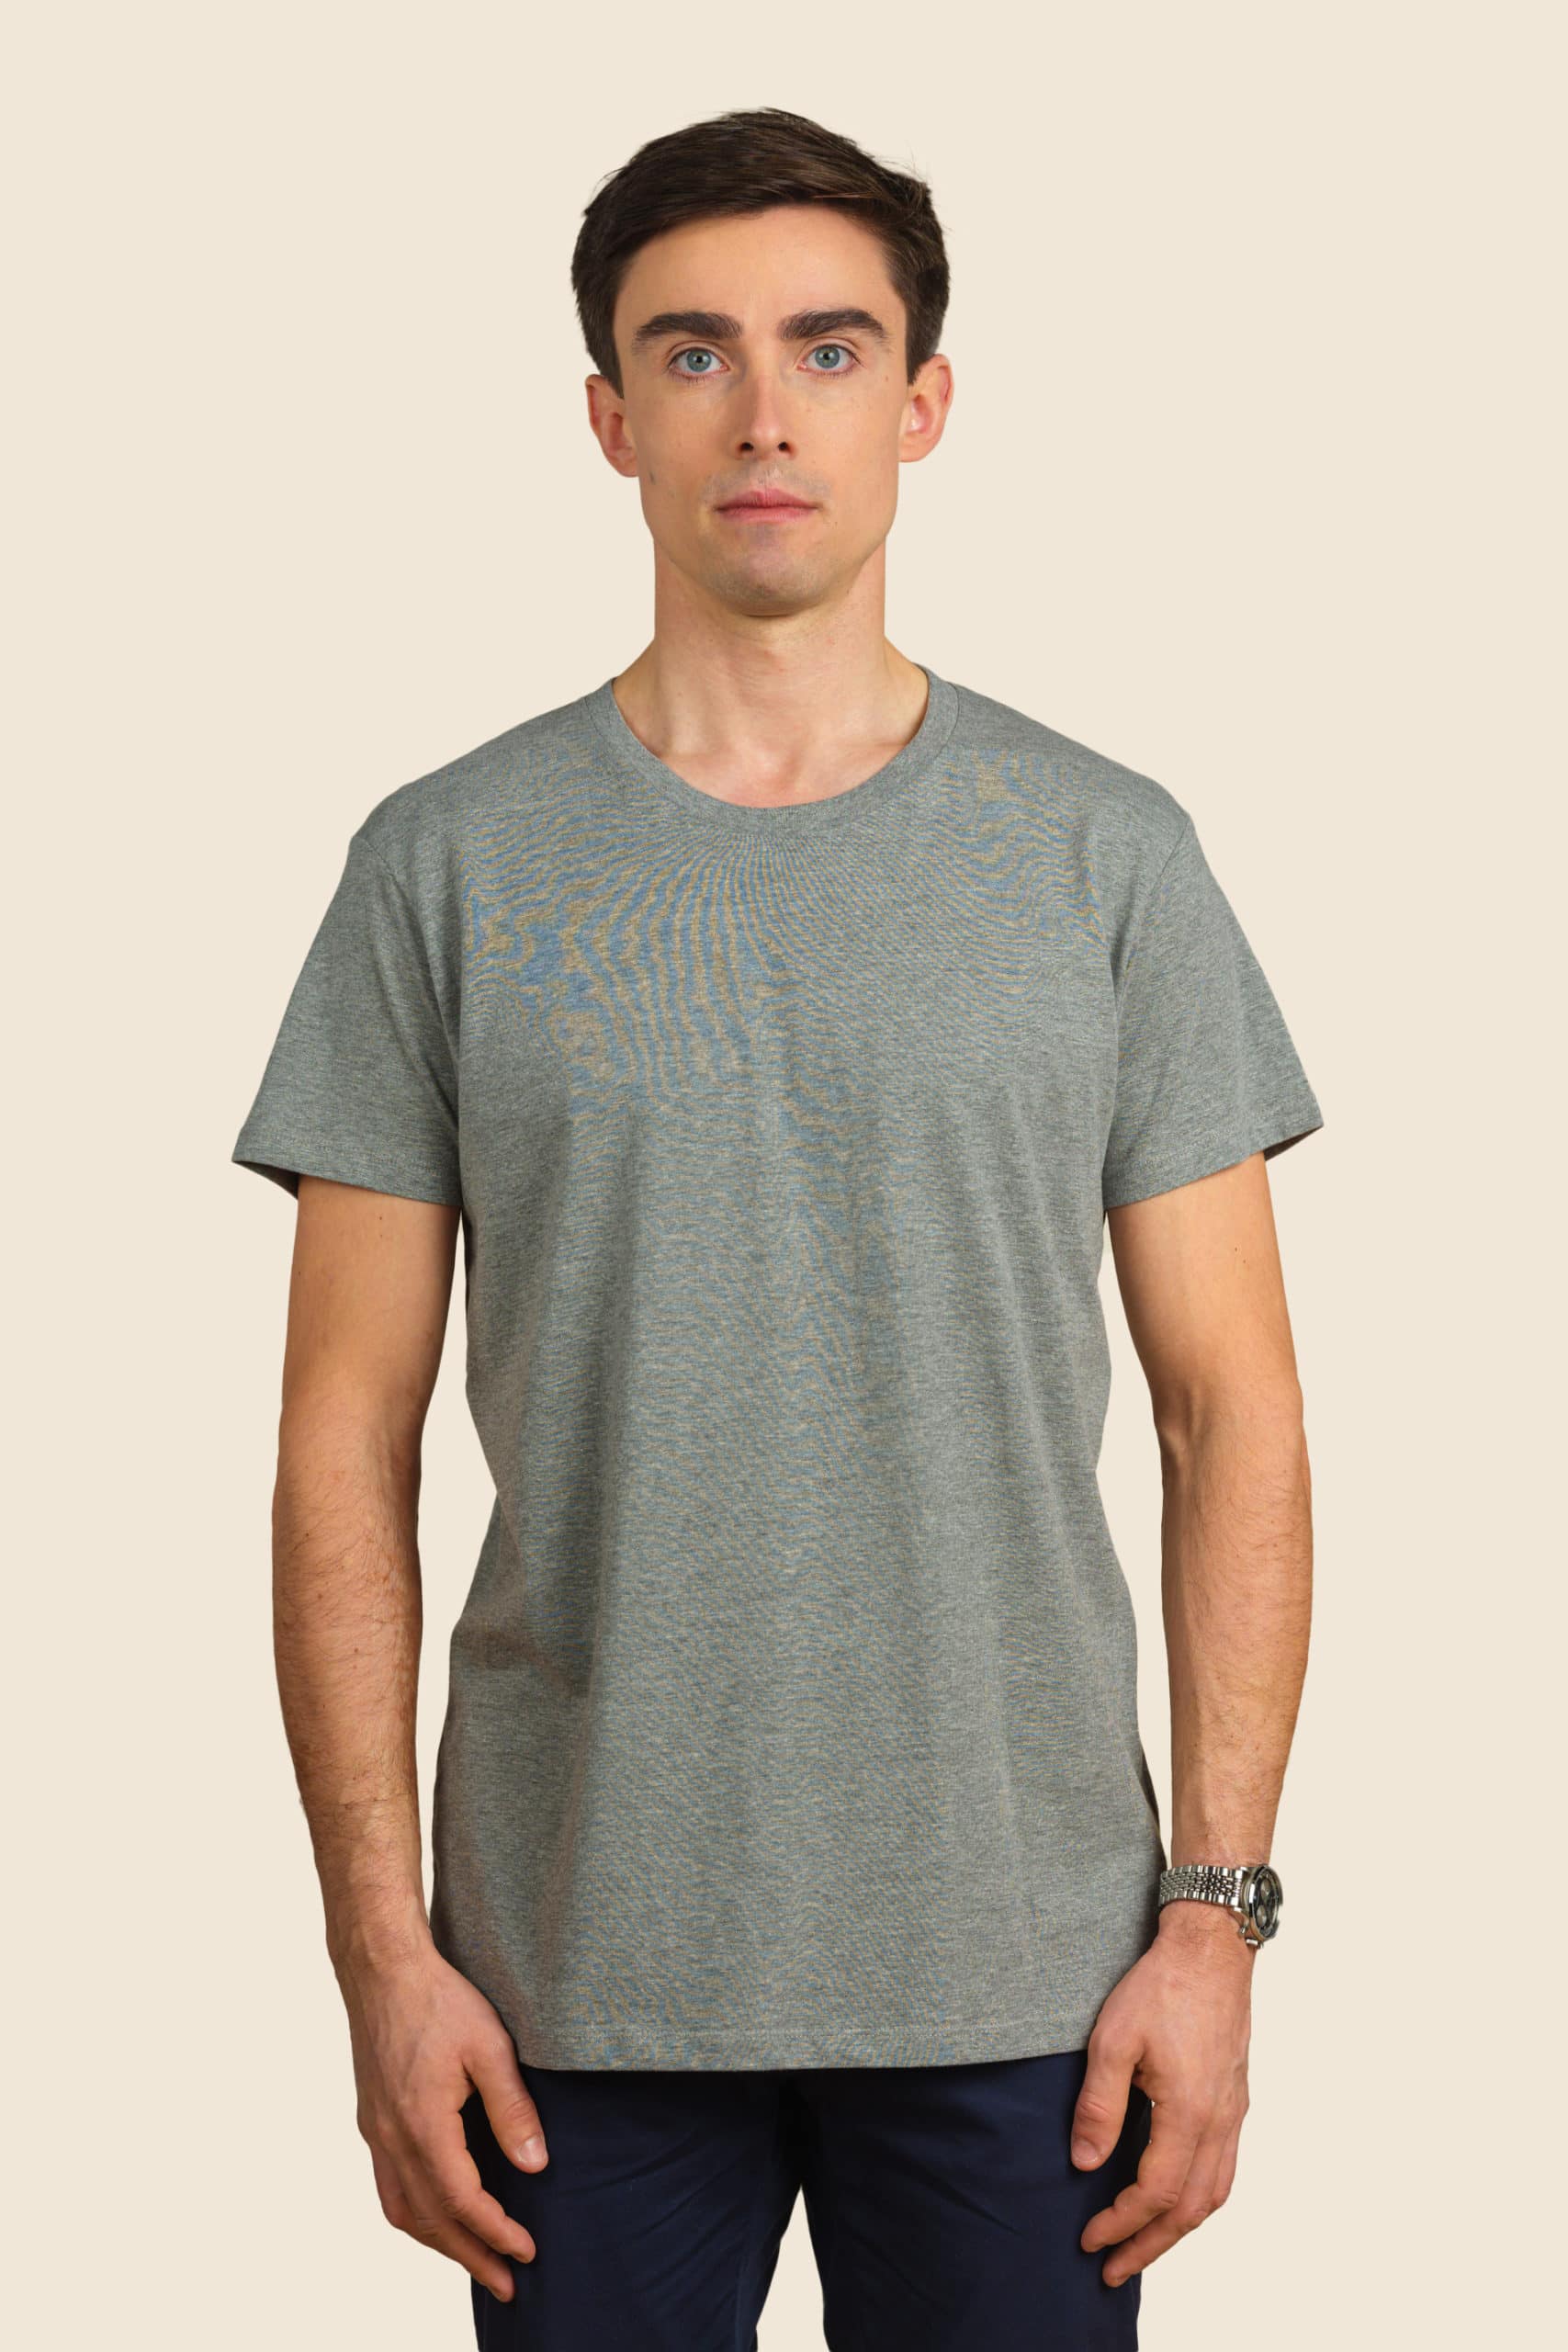 t-shirt léger gris homme personnalisable - Icone Design